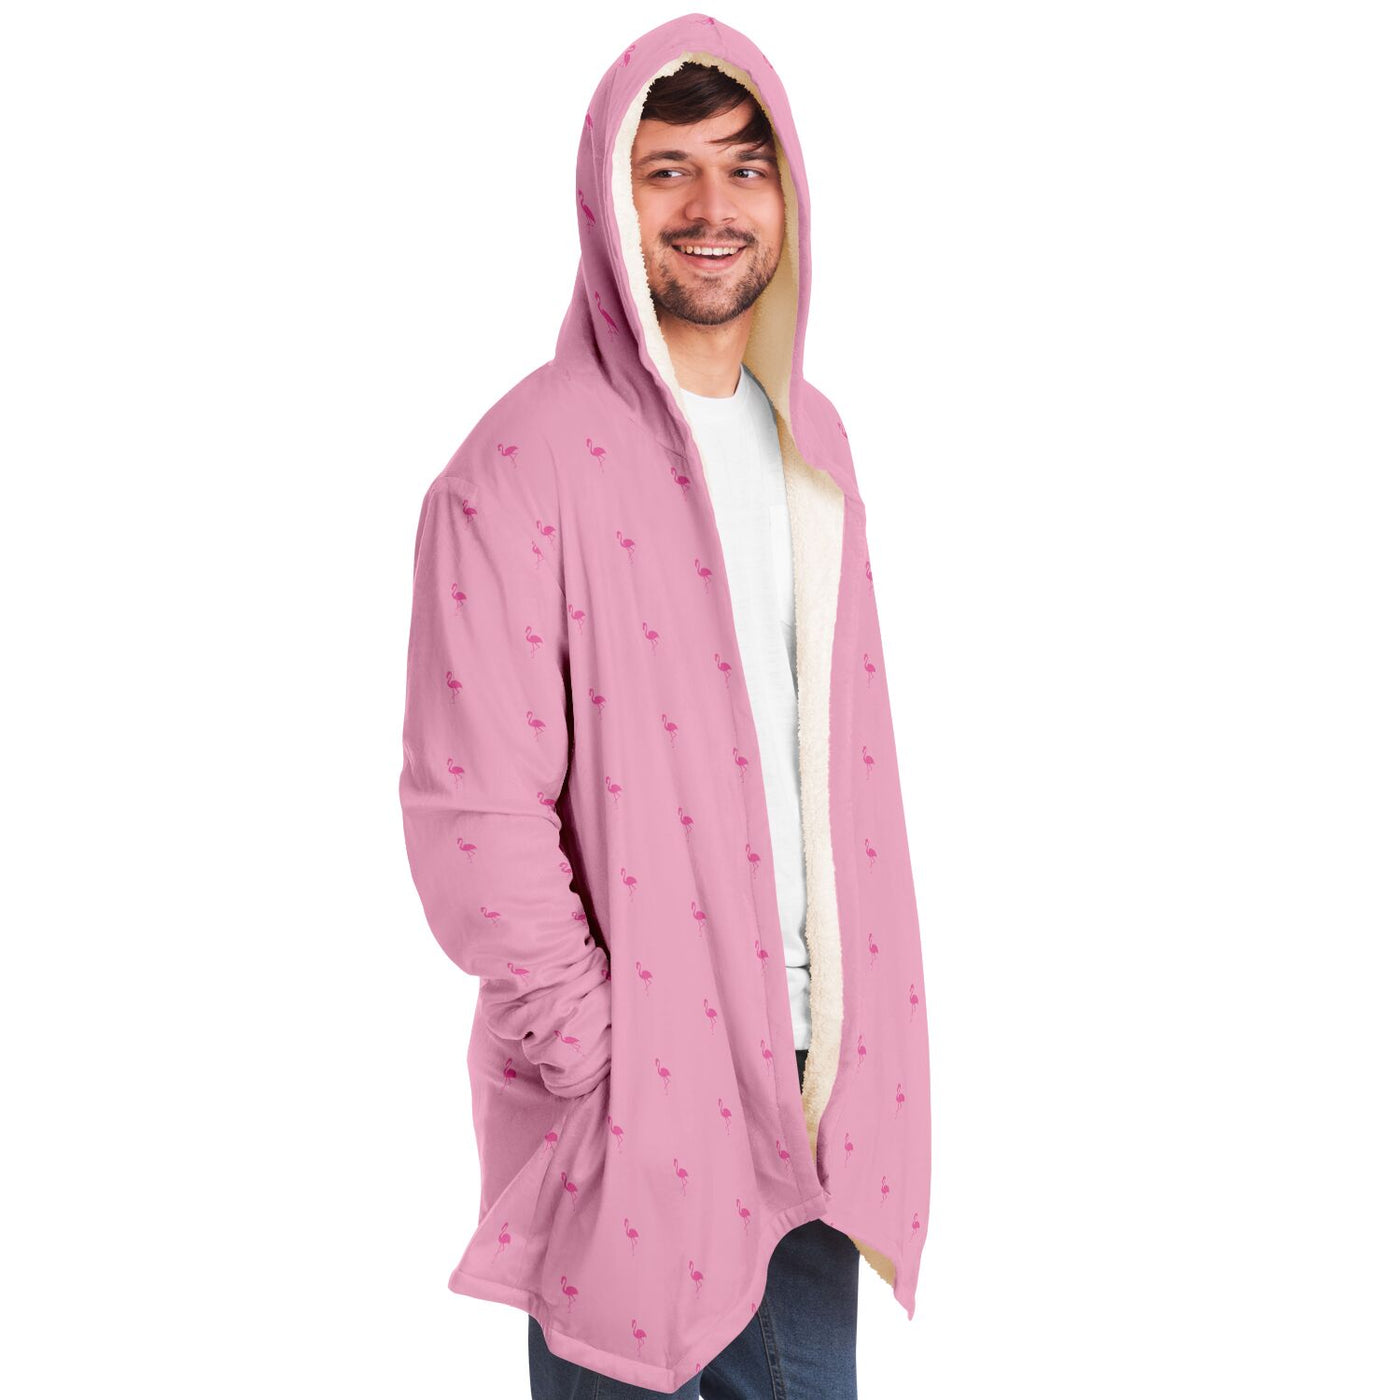 Simple Pink Flamingo Cloak Hoodie